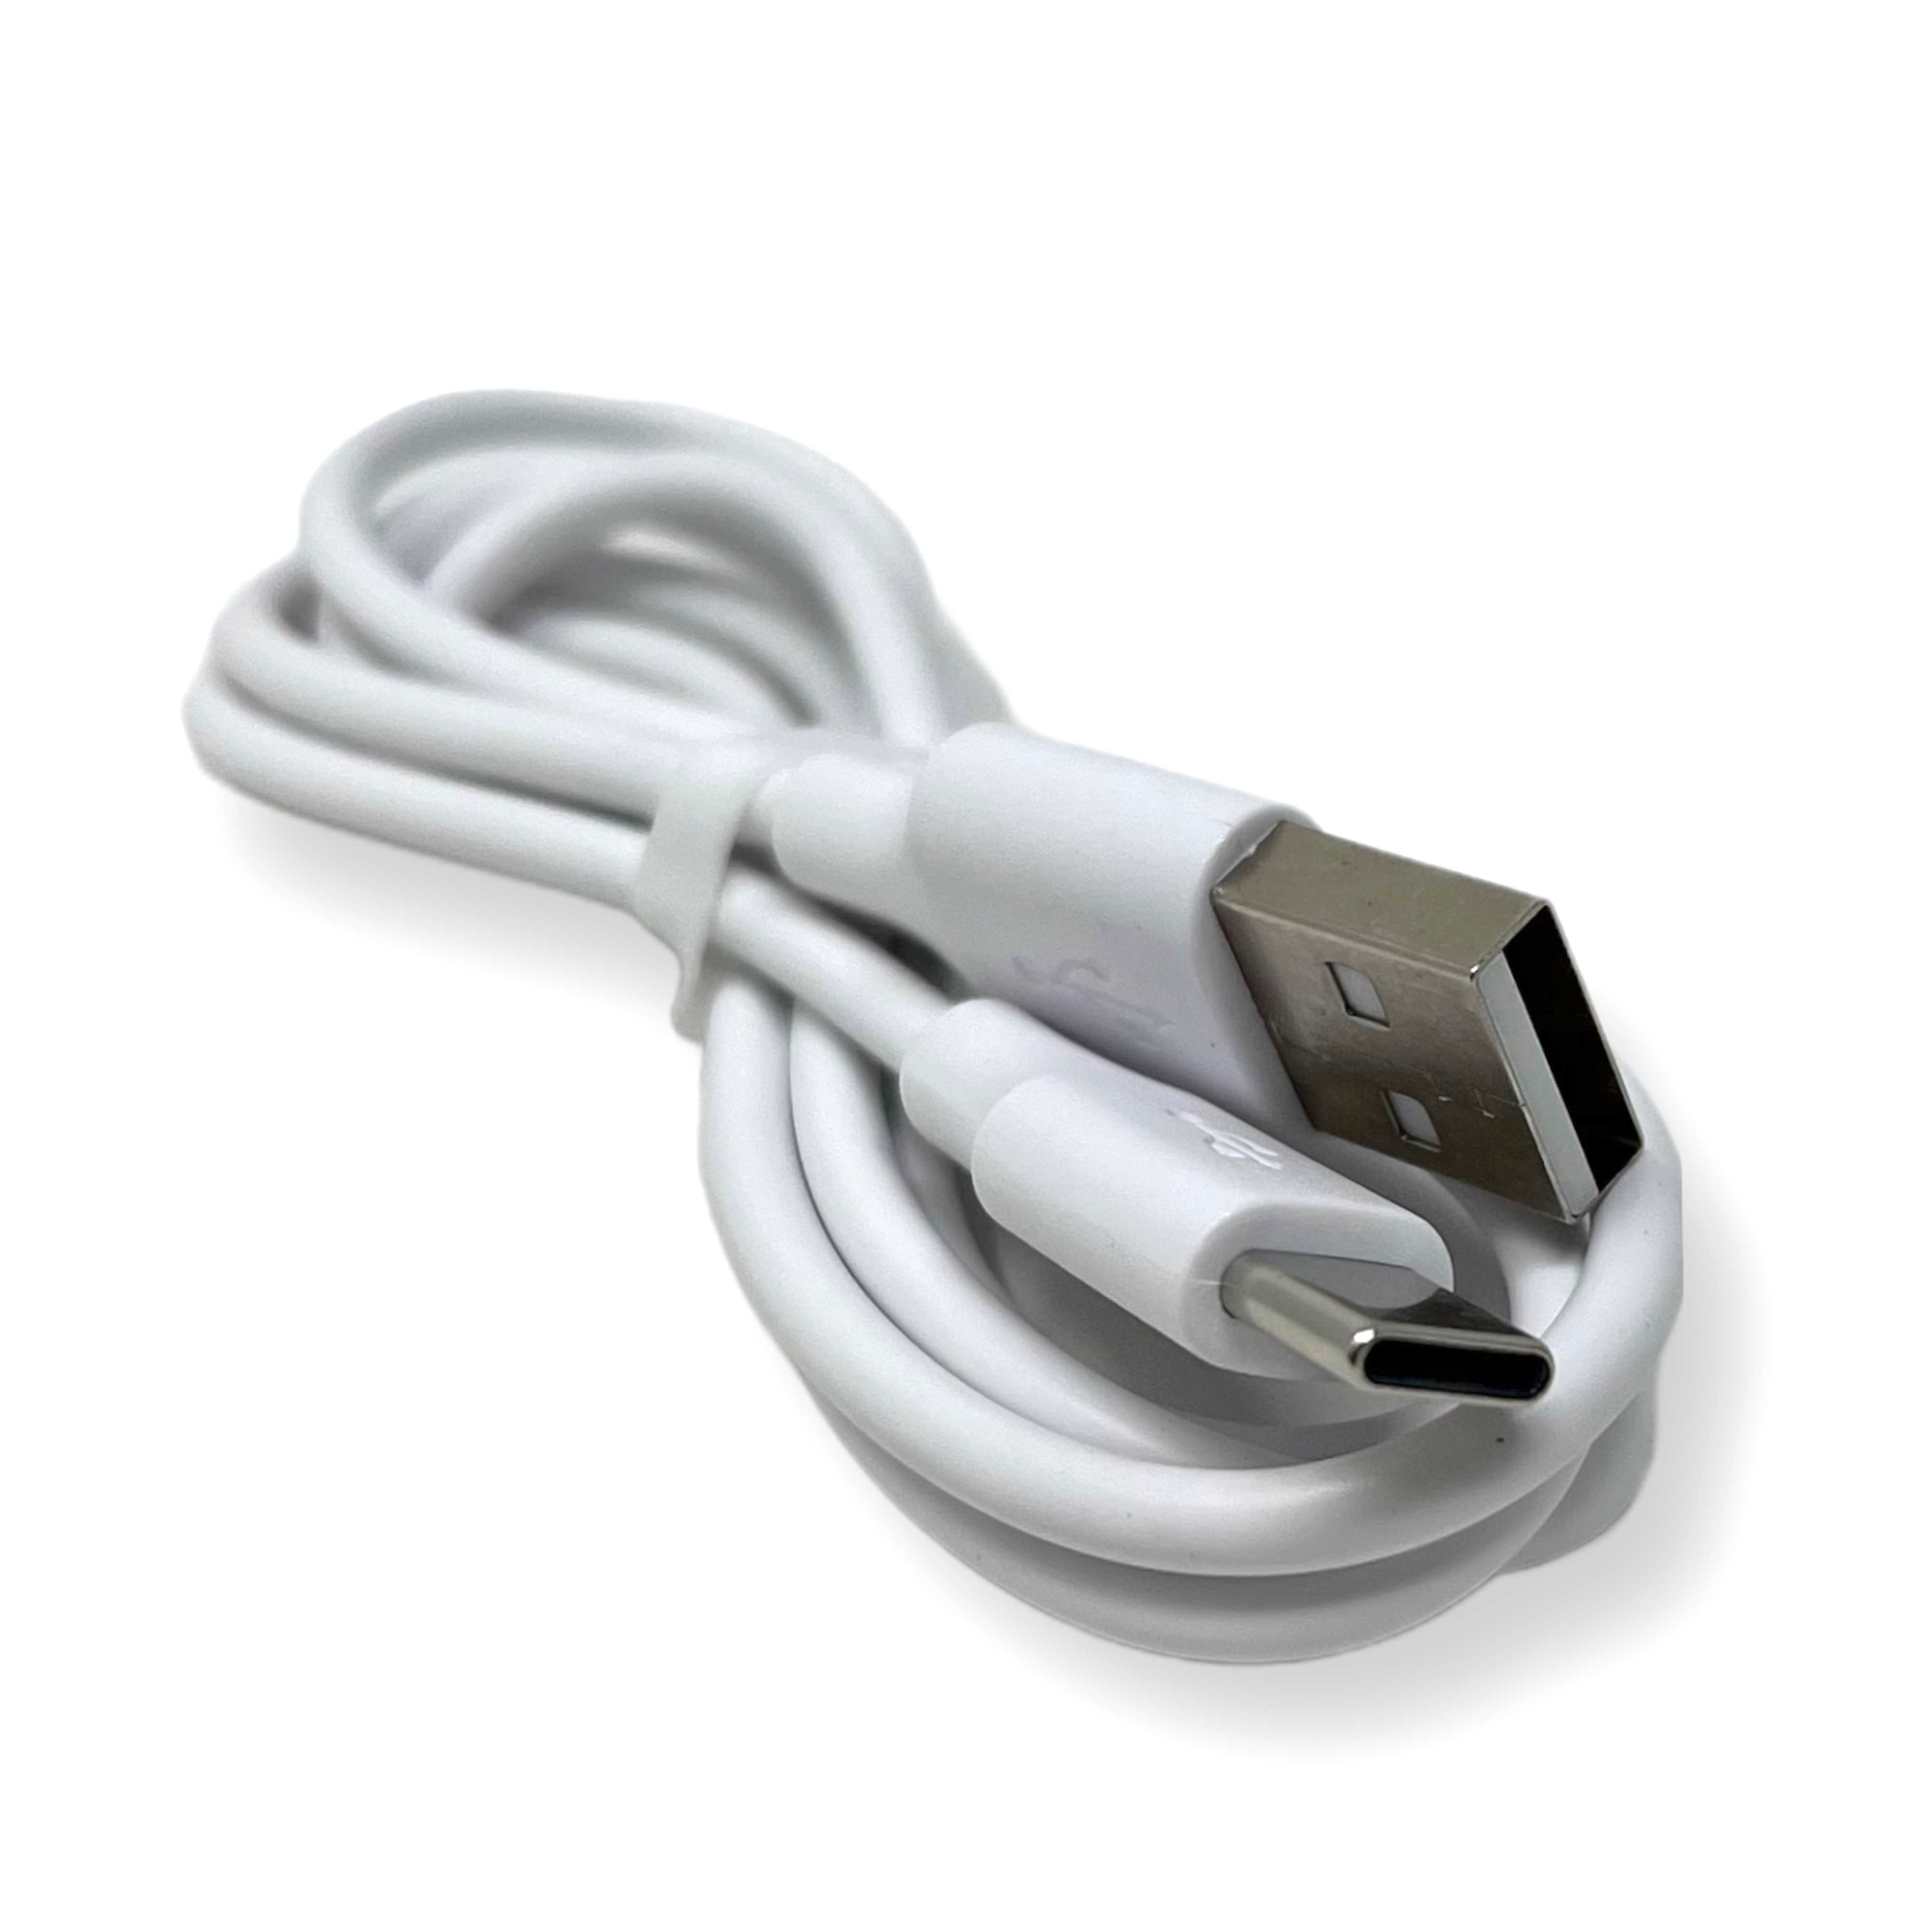 Cable de carga rápida y transmisión de datos USB-A a Tipo-C